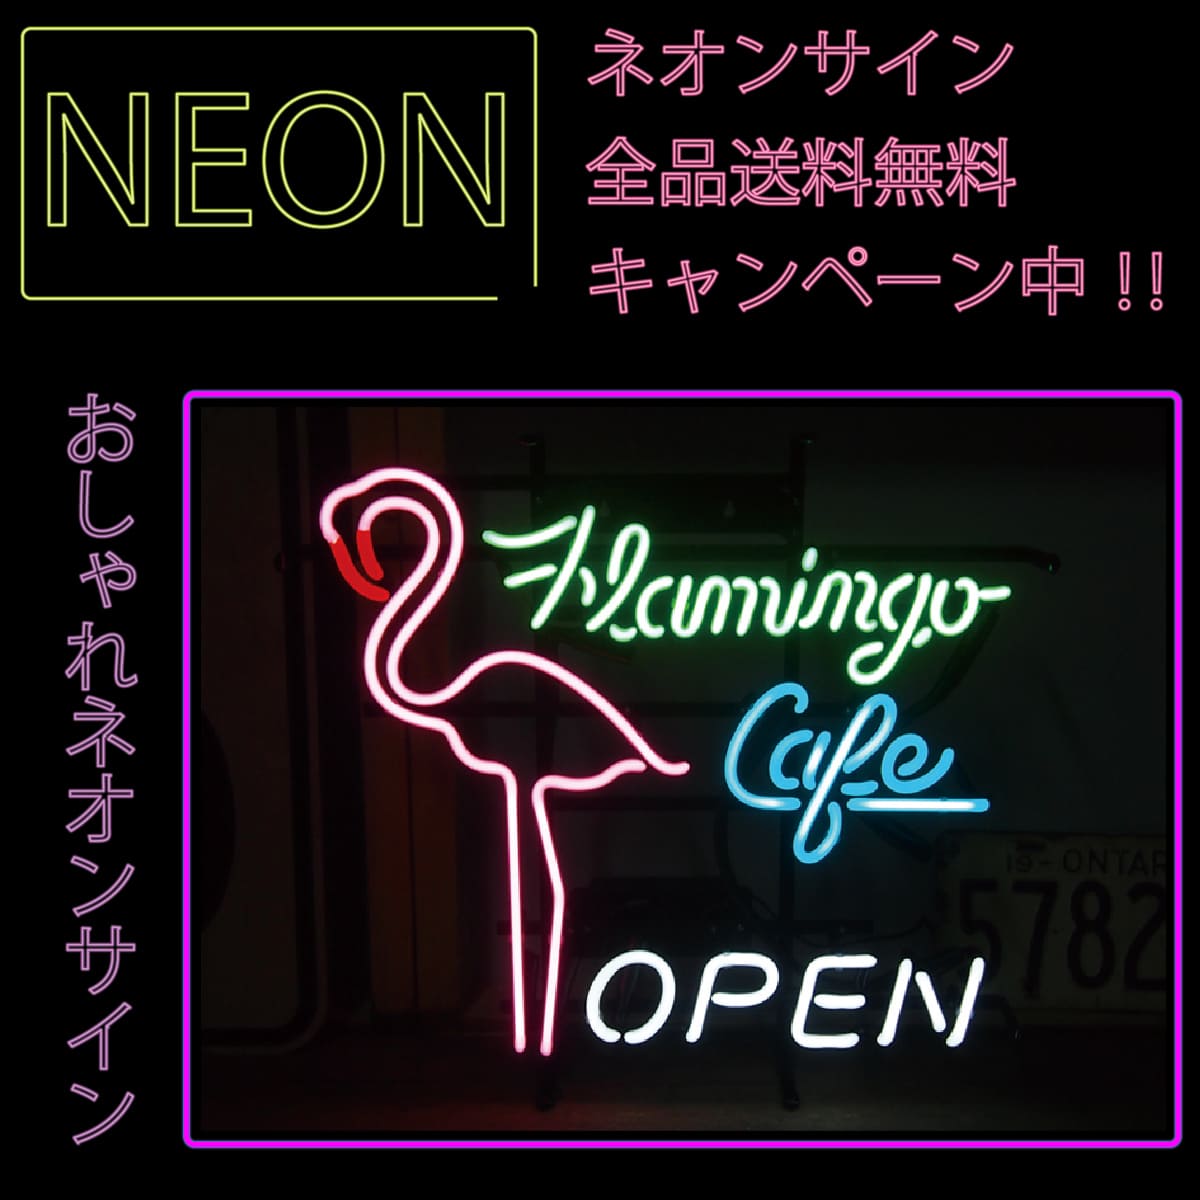 ネオンサイン 送料無料 かっこいい オシャレ インテリア Flamingo Cafe Dinner カフェ インスタ インスタ映え 海外ショップ